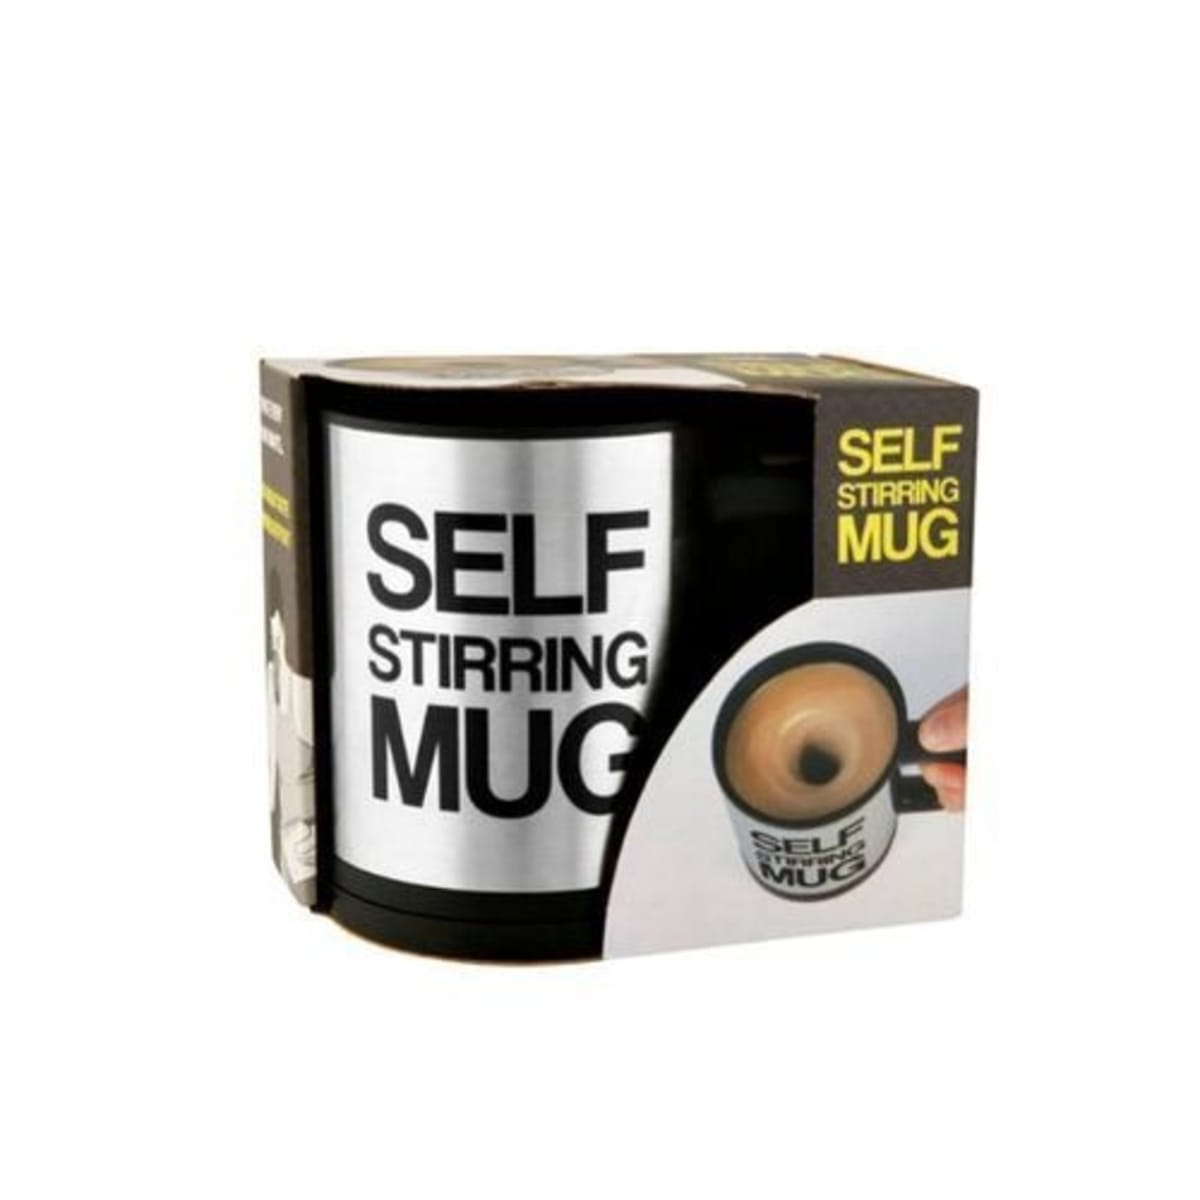 Magic Mug Self Stirring Mug